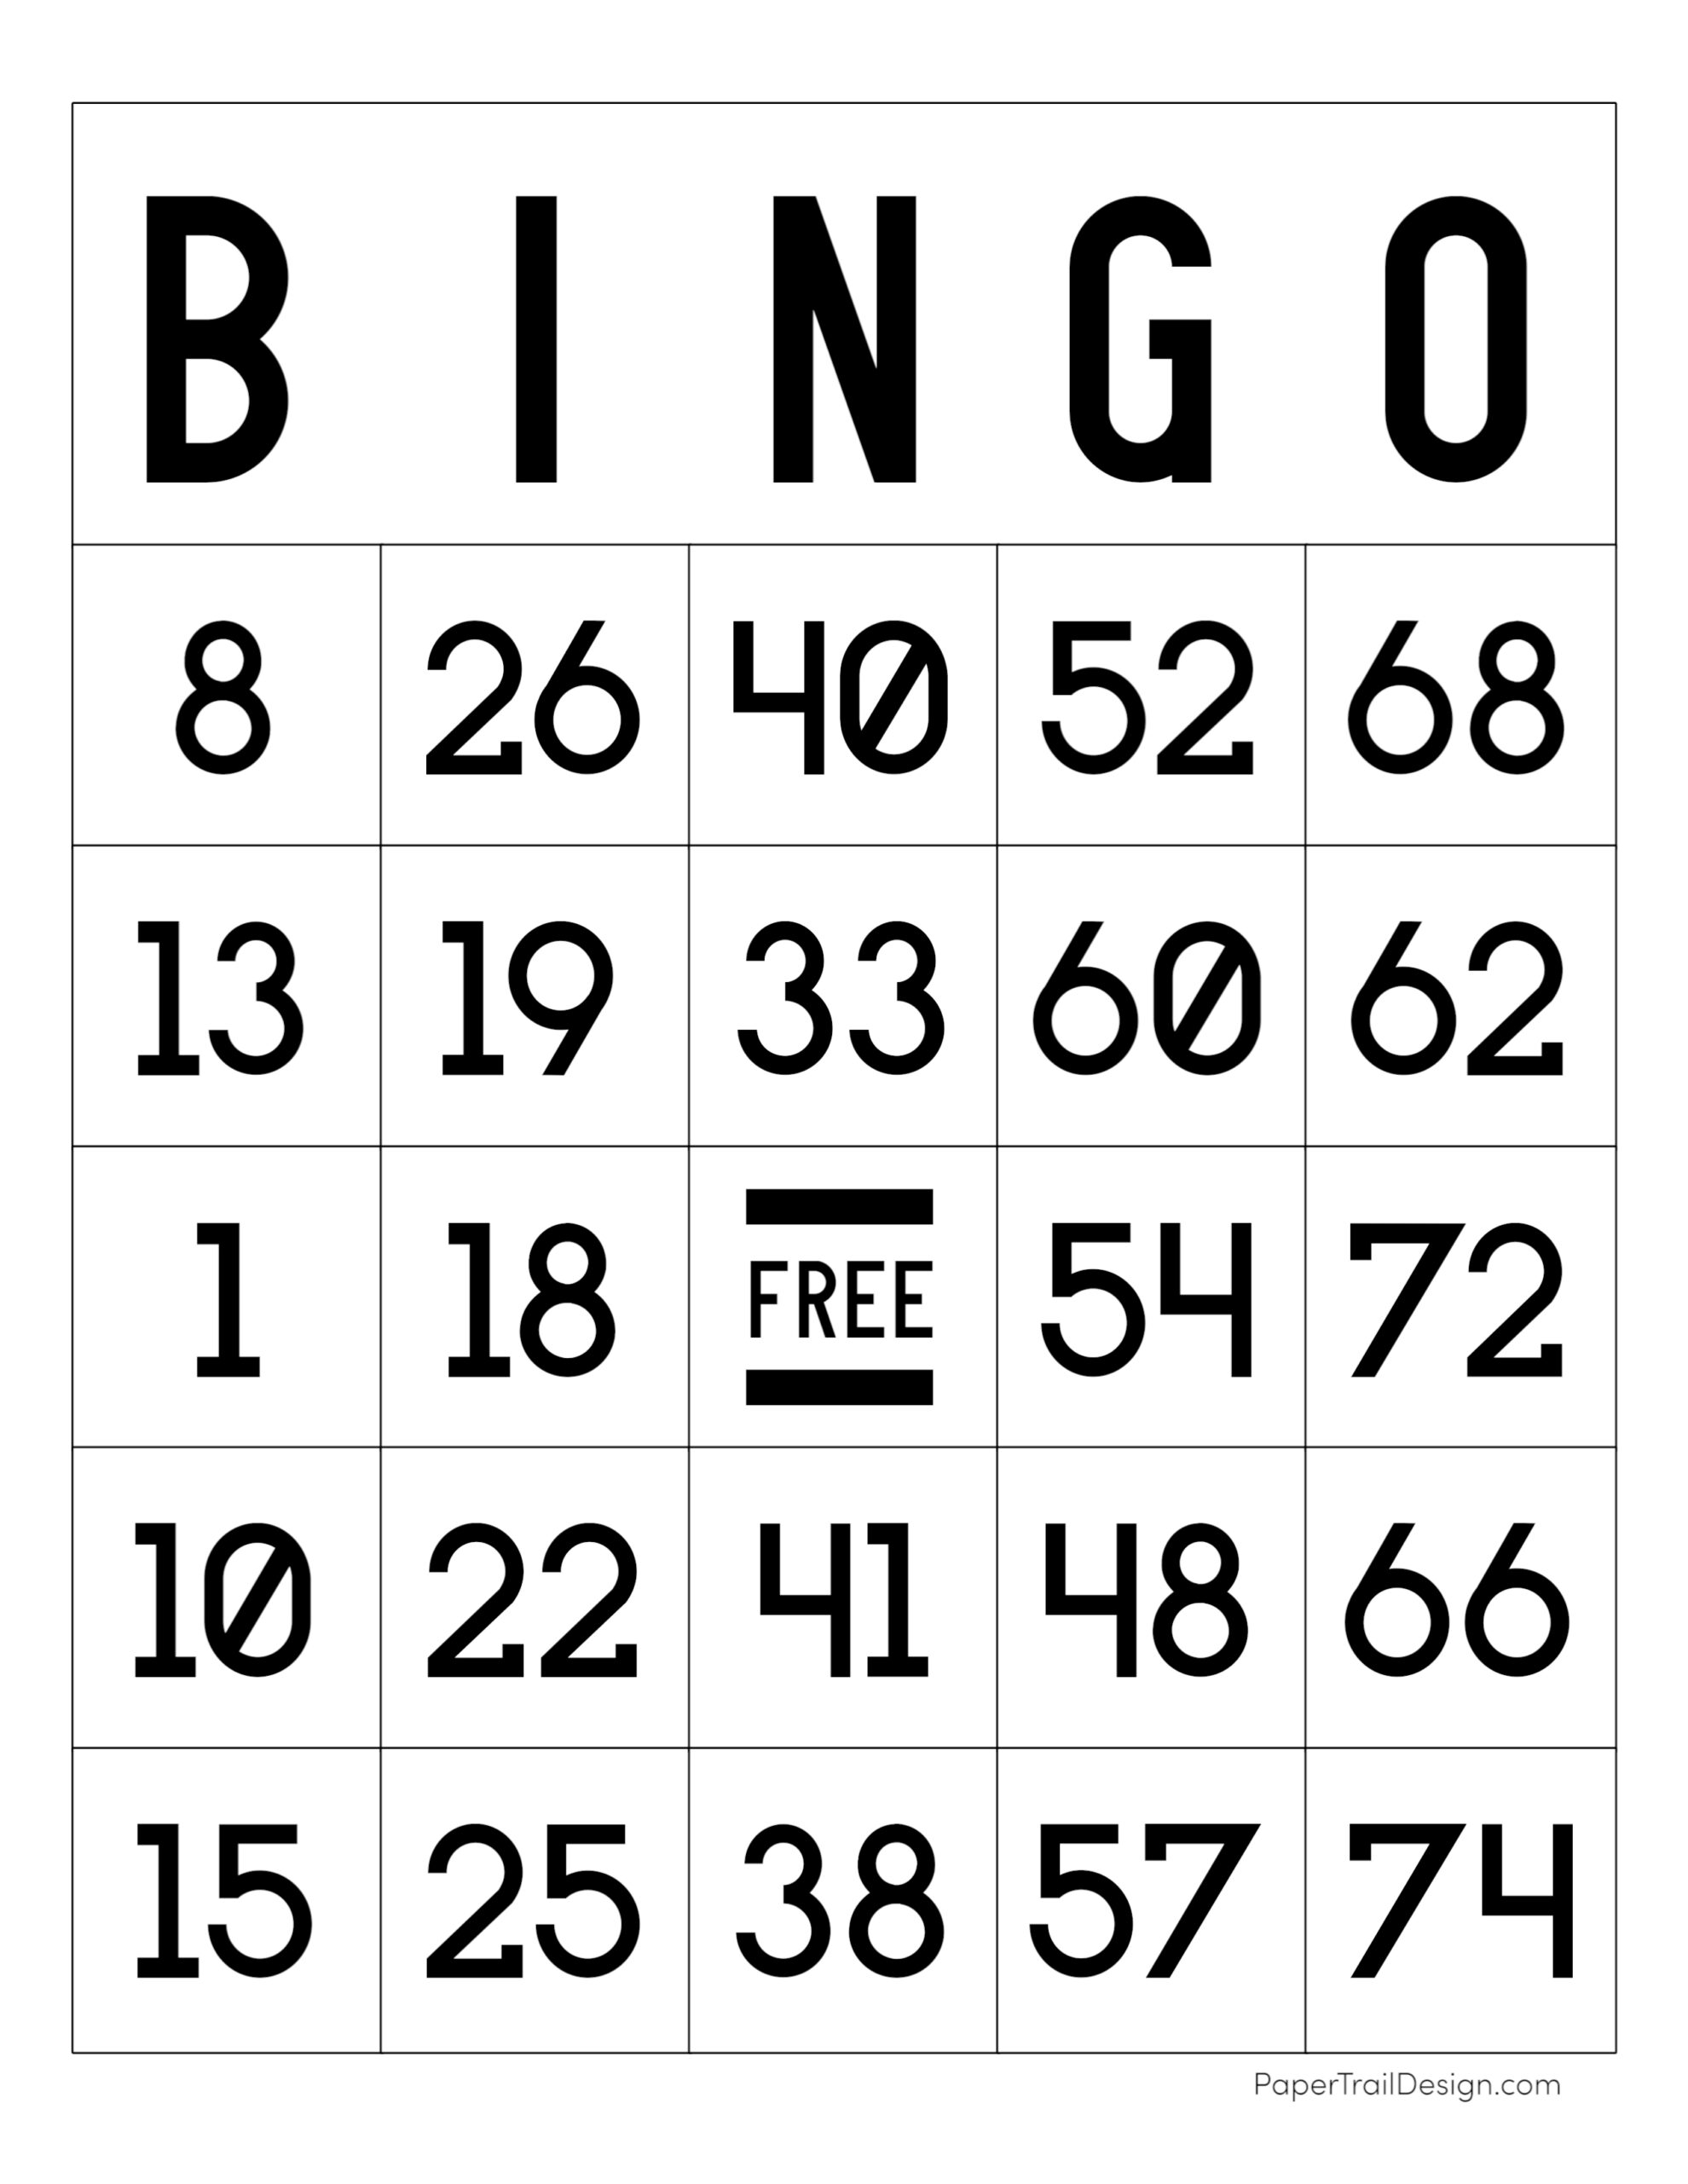 pix bet bingo